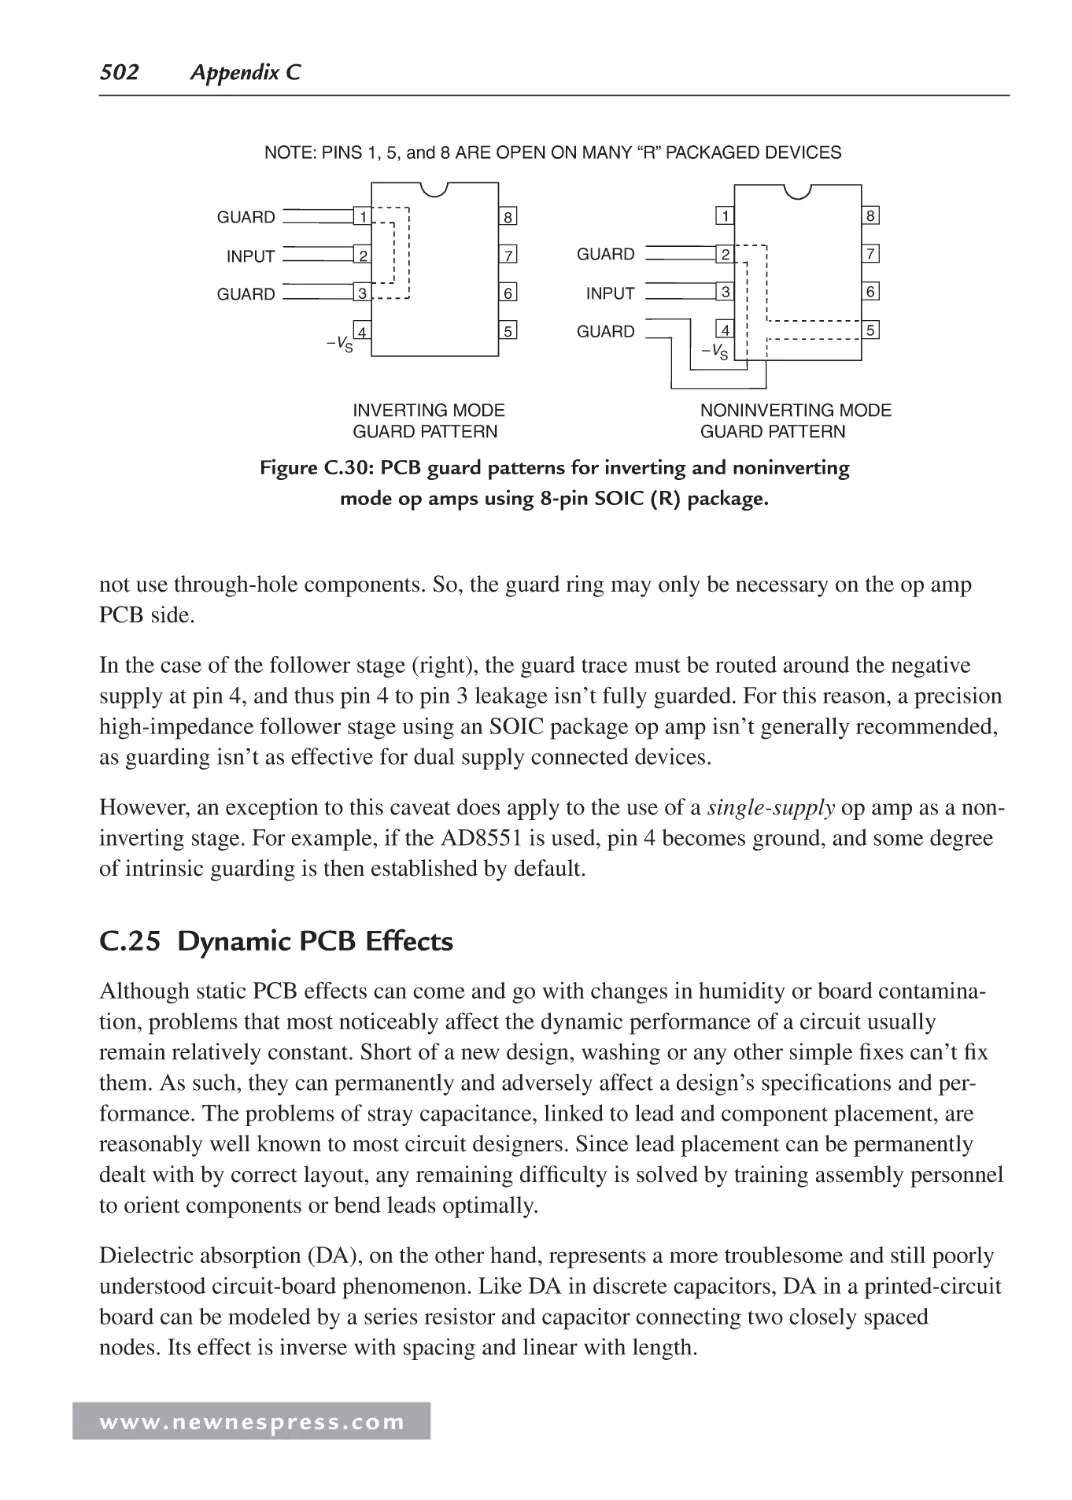 C.25 Dynamic PCB Effects